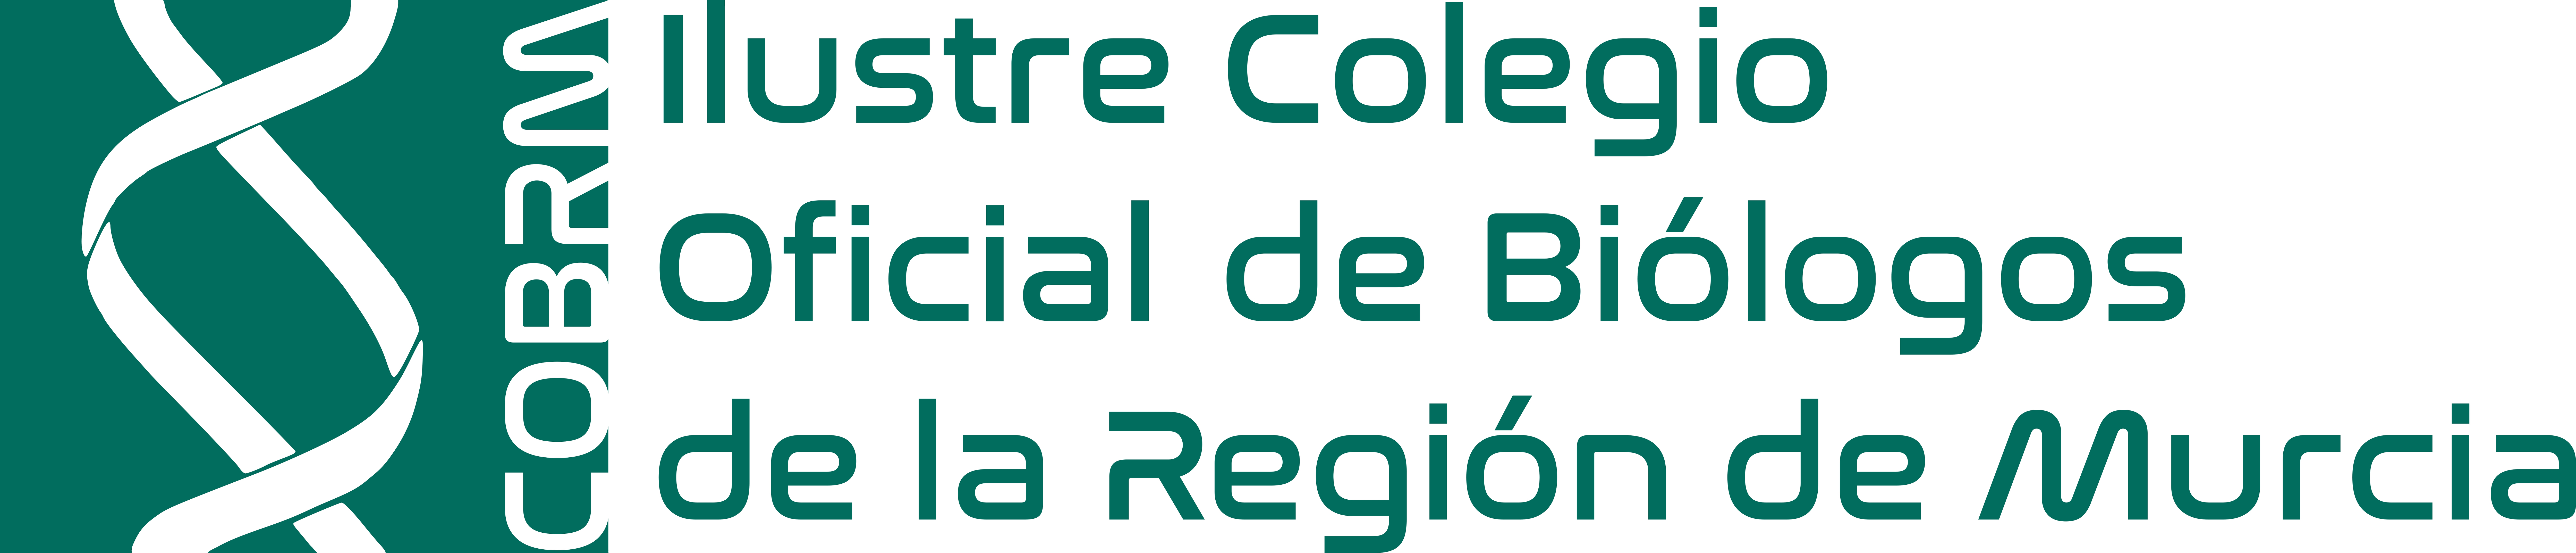 Colegio Oficial de Biólogos de Murcia